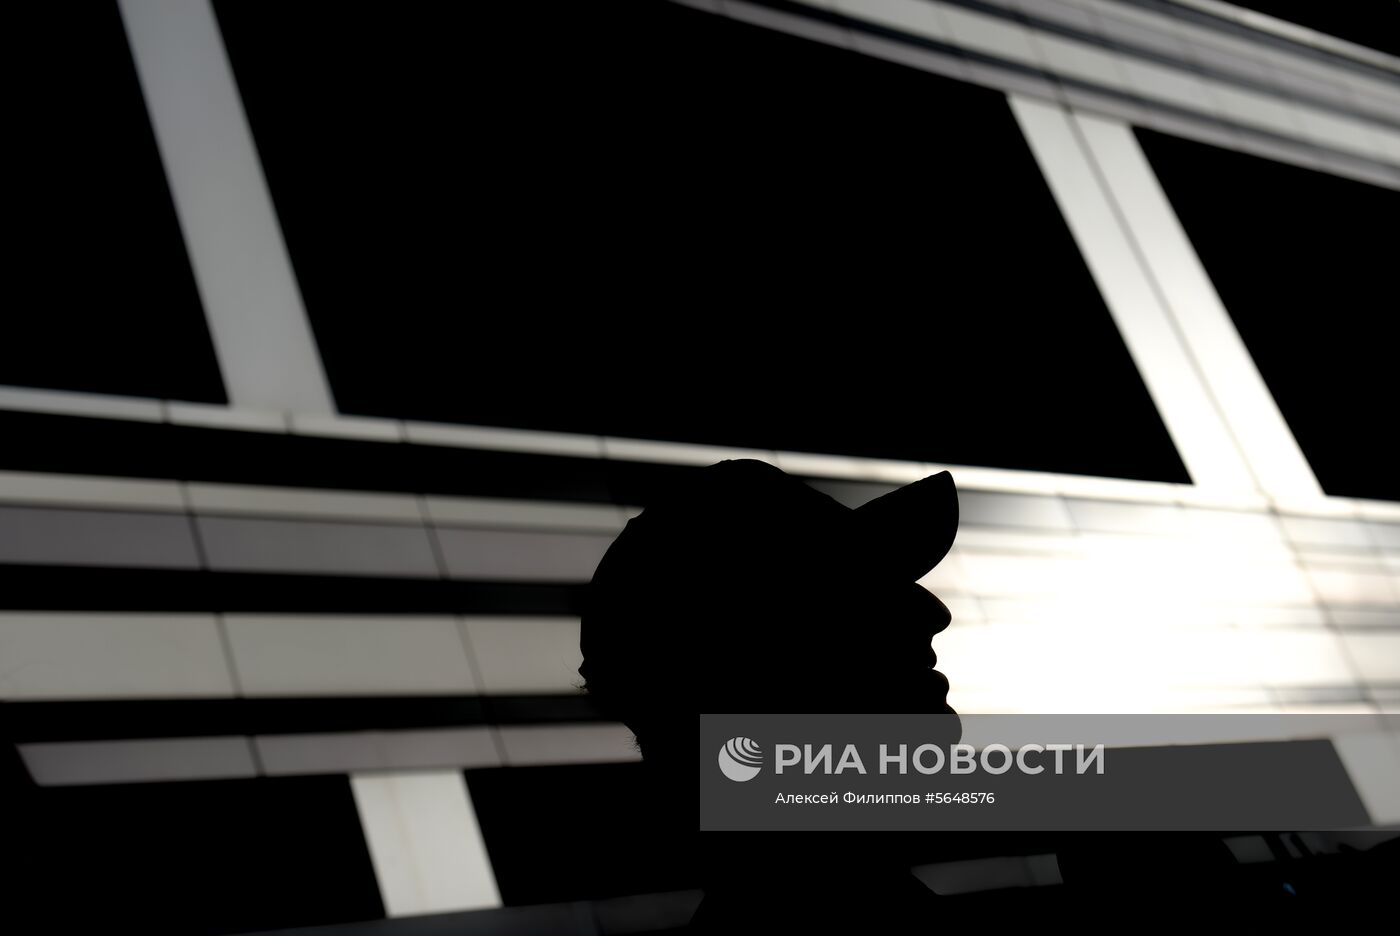 Подготовка к российскому этапу чемпионата мира по кольцевым автогонкам в классе "Формула-1"